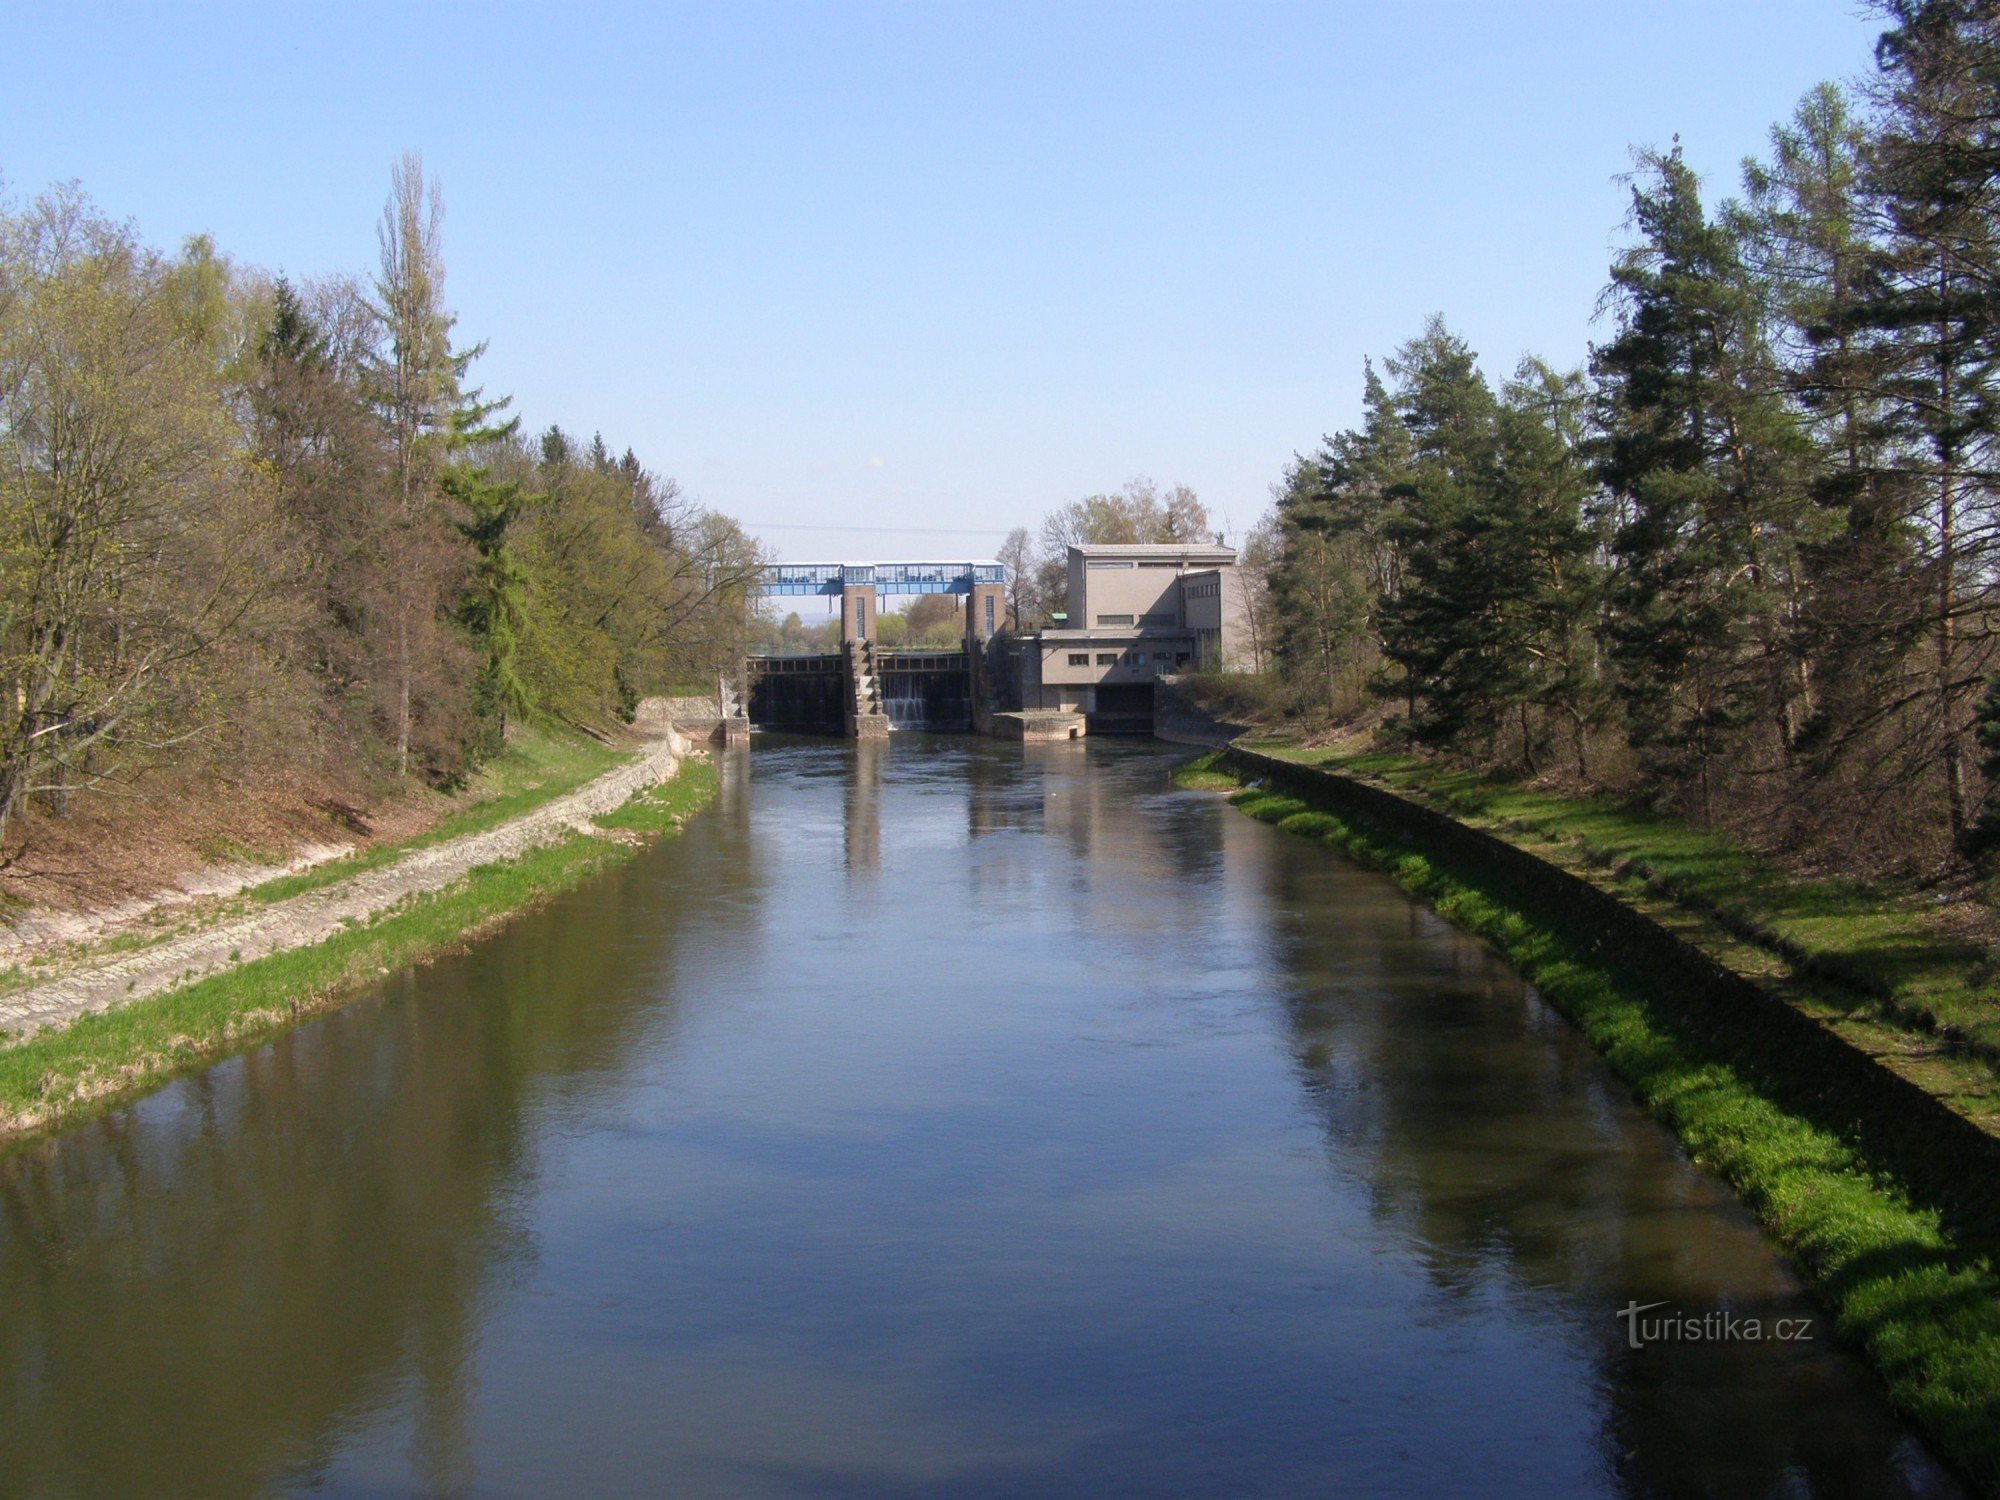 Barrage de Smiřický - centrale hydroélectrique sur l'Elbe